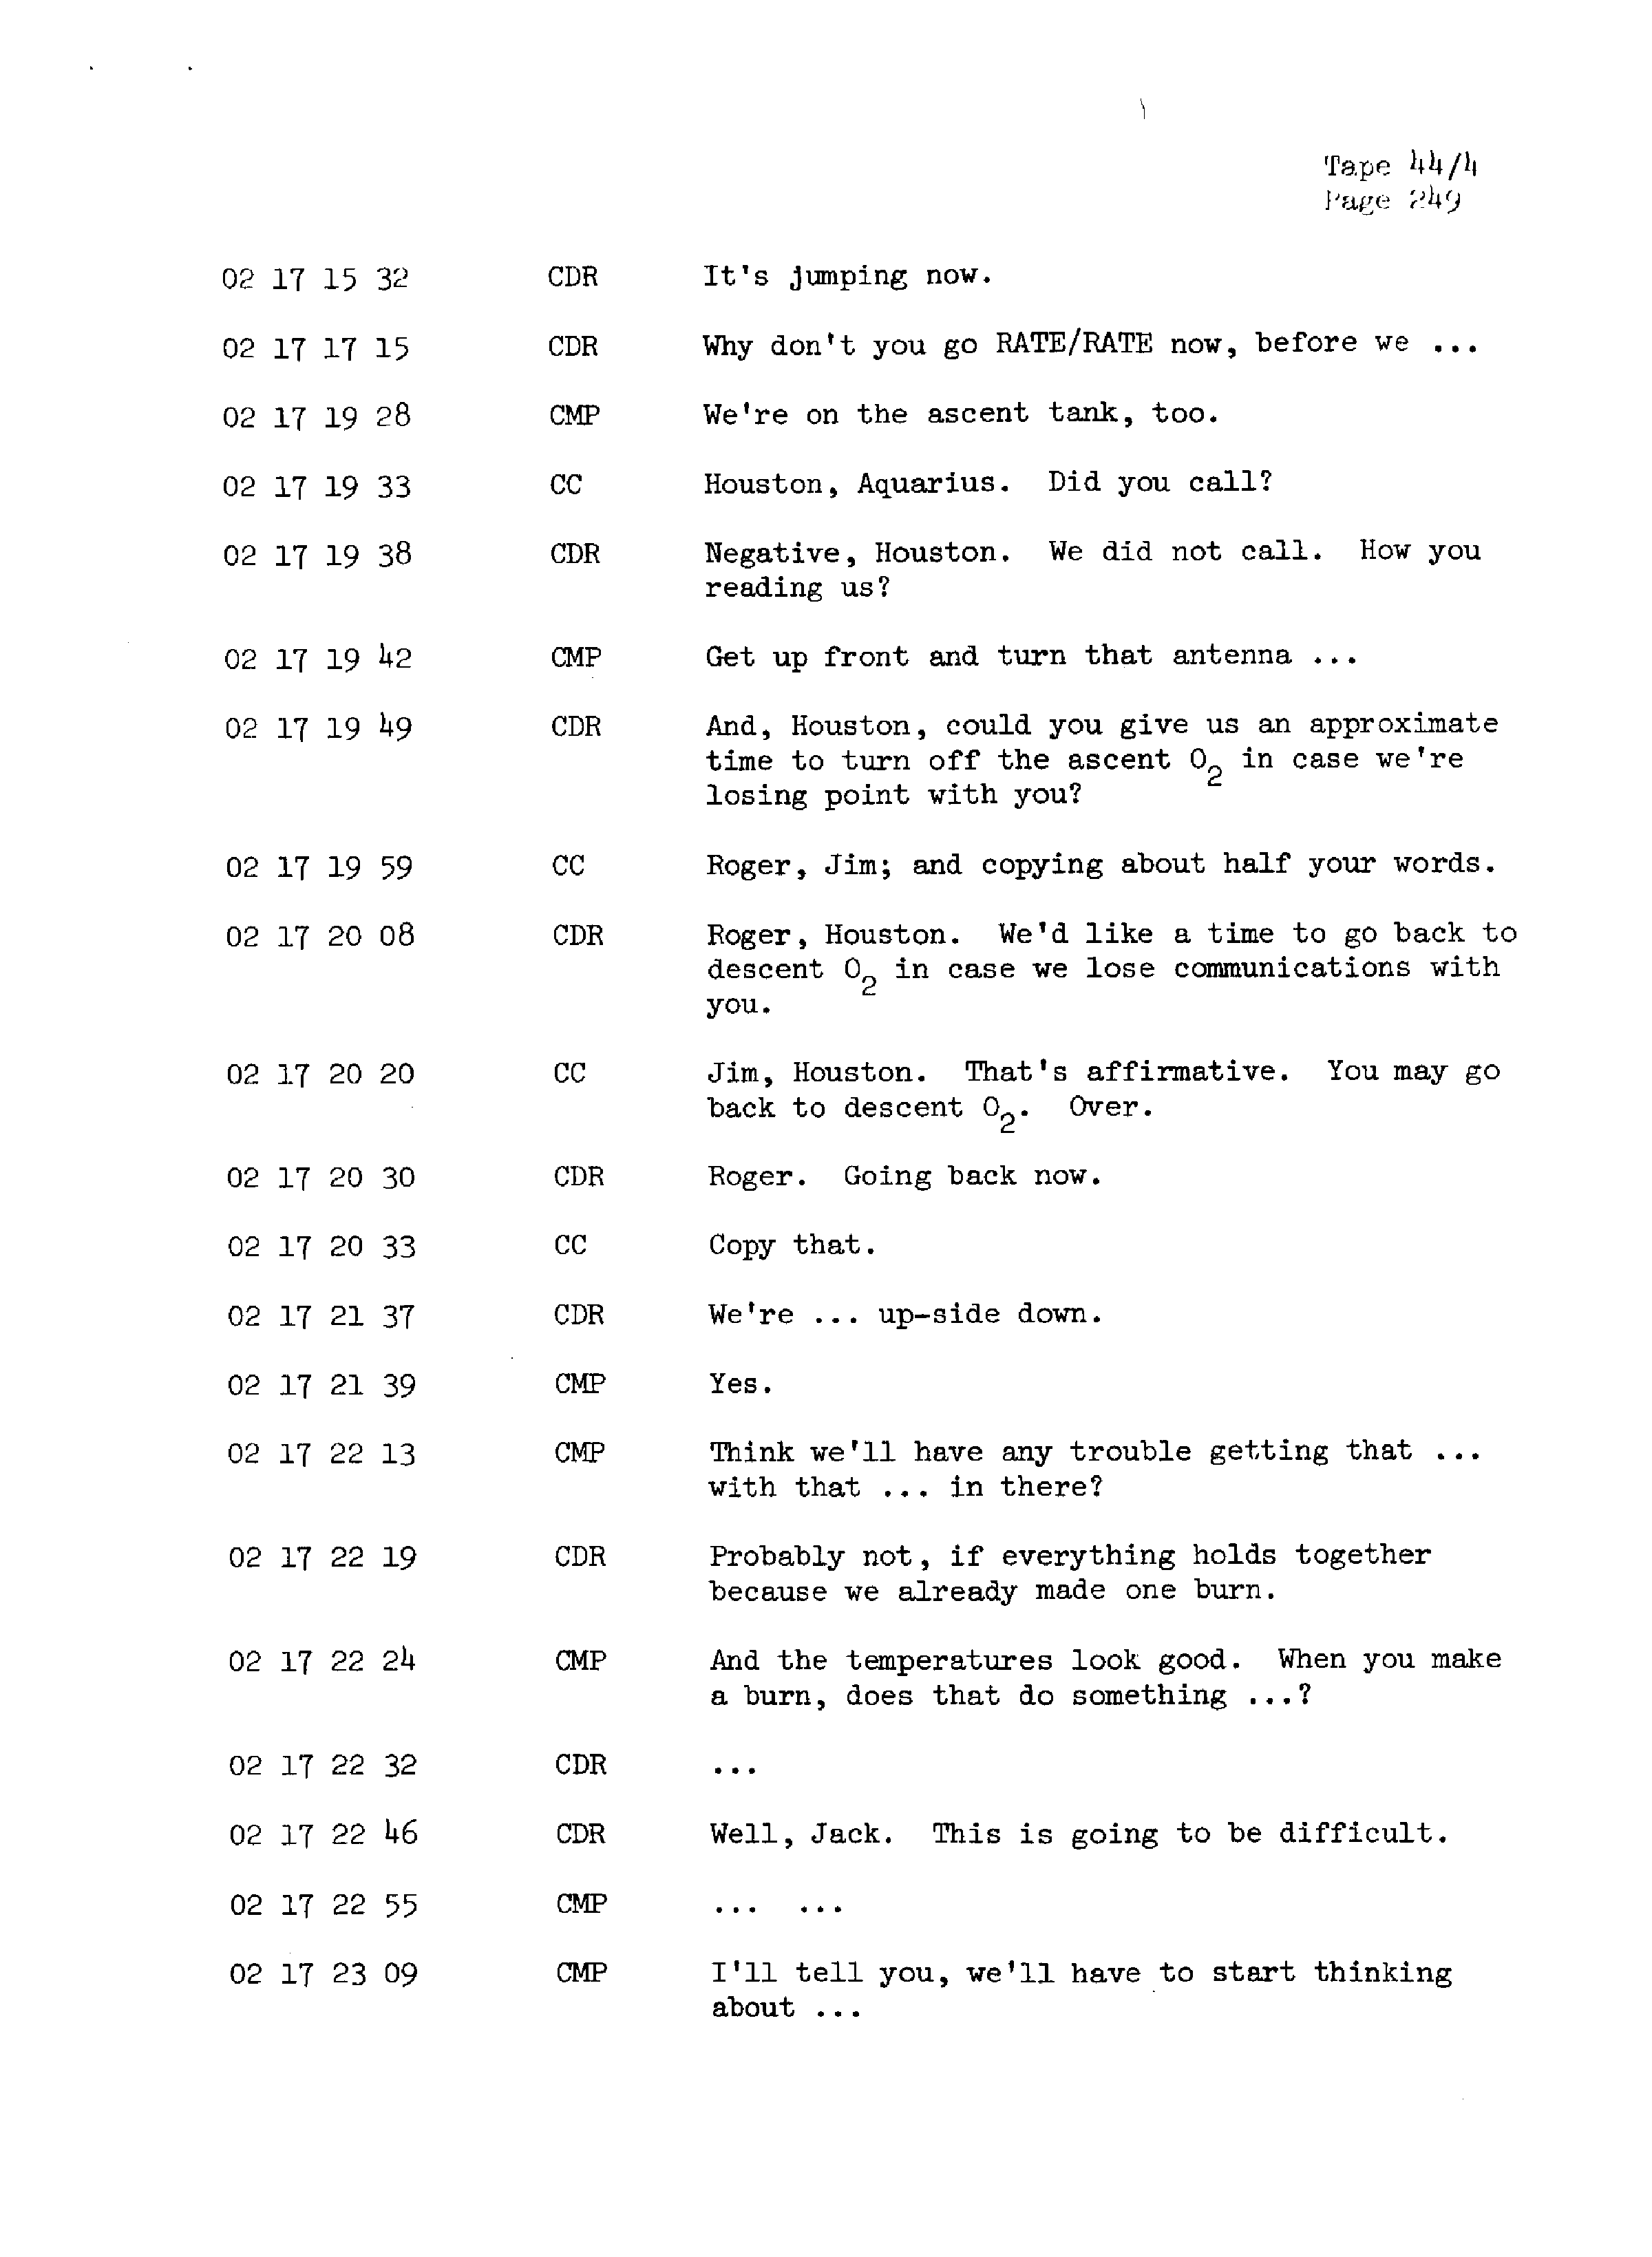 Page 256 of Apollo 13’s original transcript